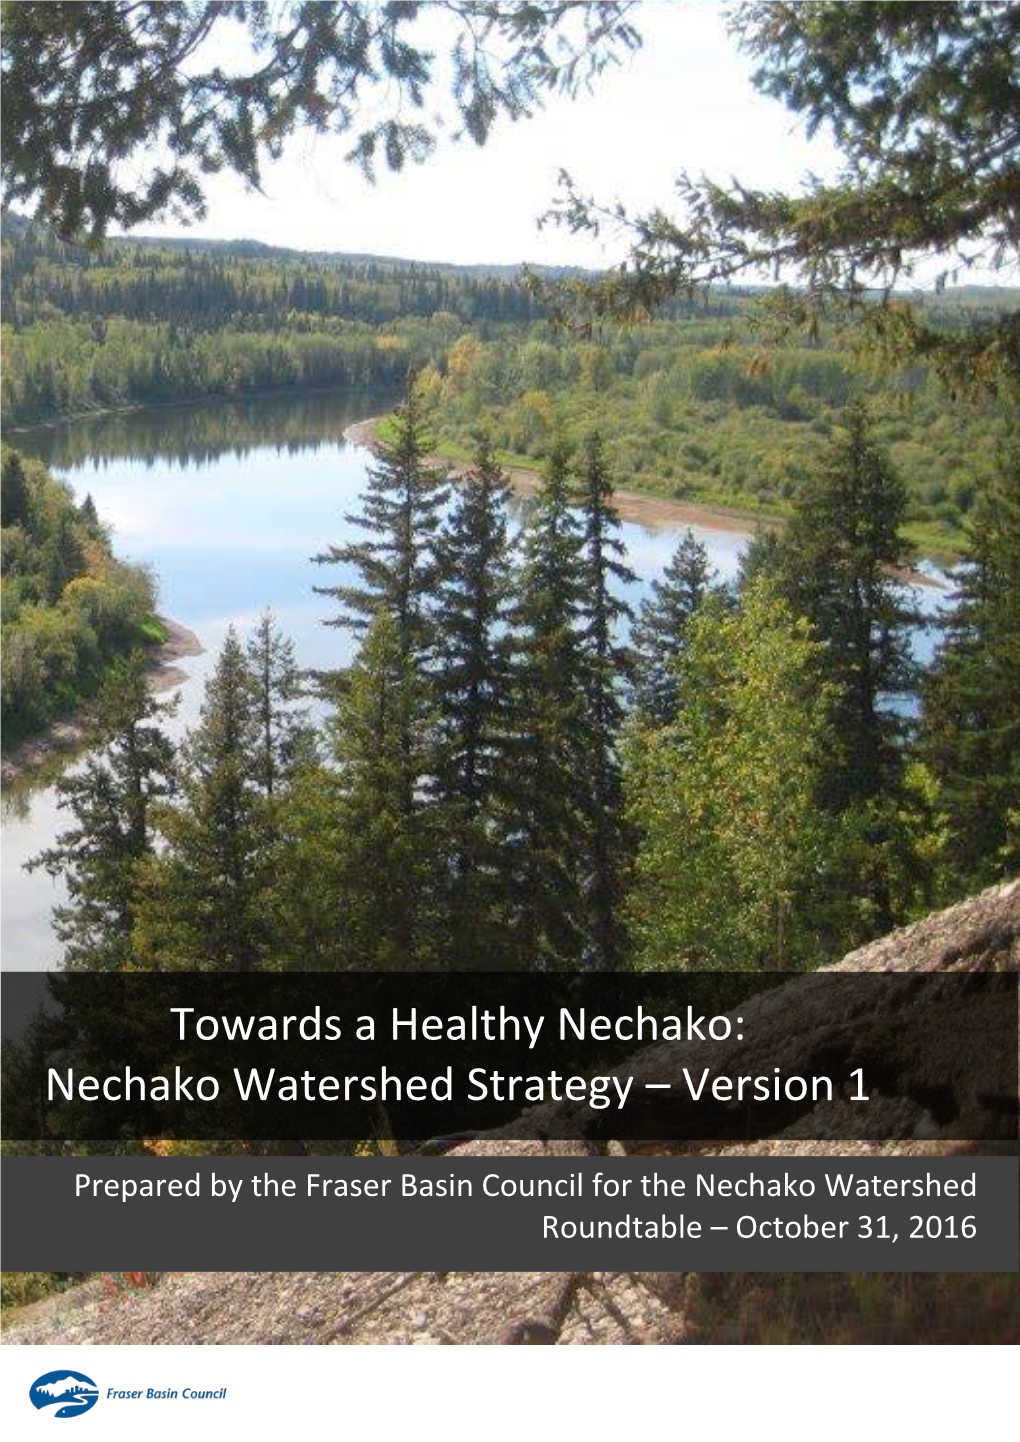 Nechako Watershed Strategy – Version 1